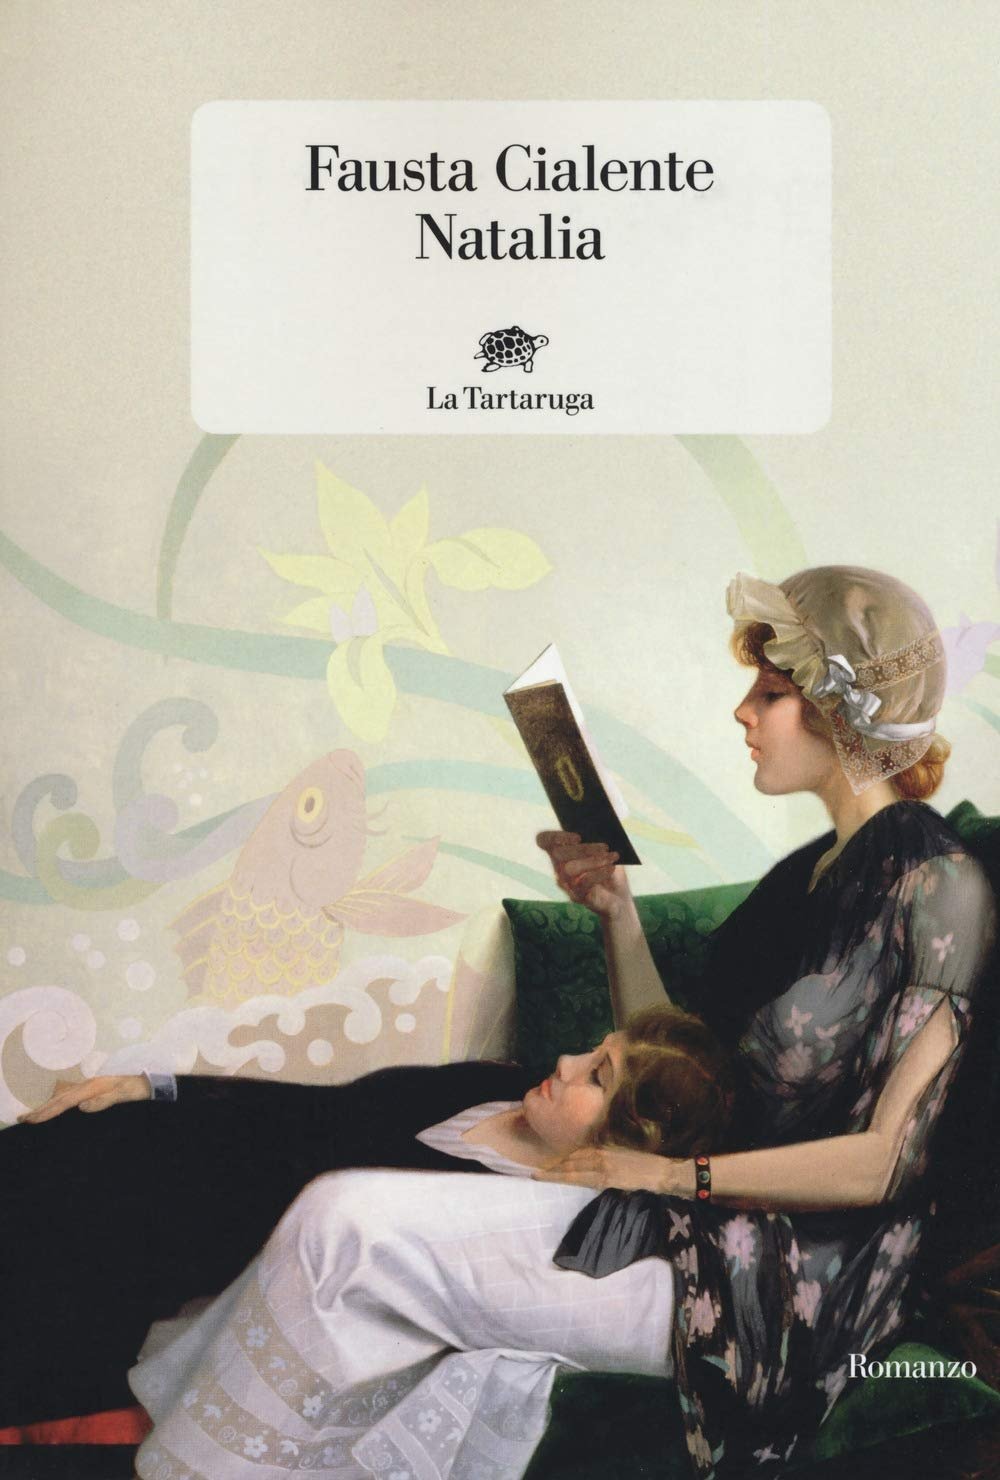 Fausta Cialente, Natalia (La Tartaruga, 2019)